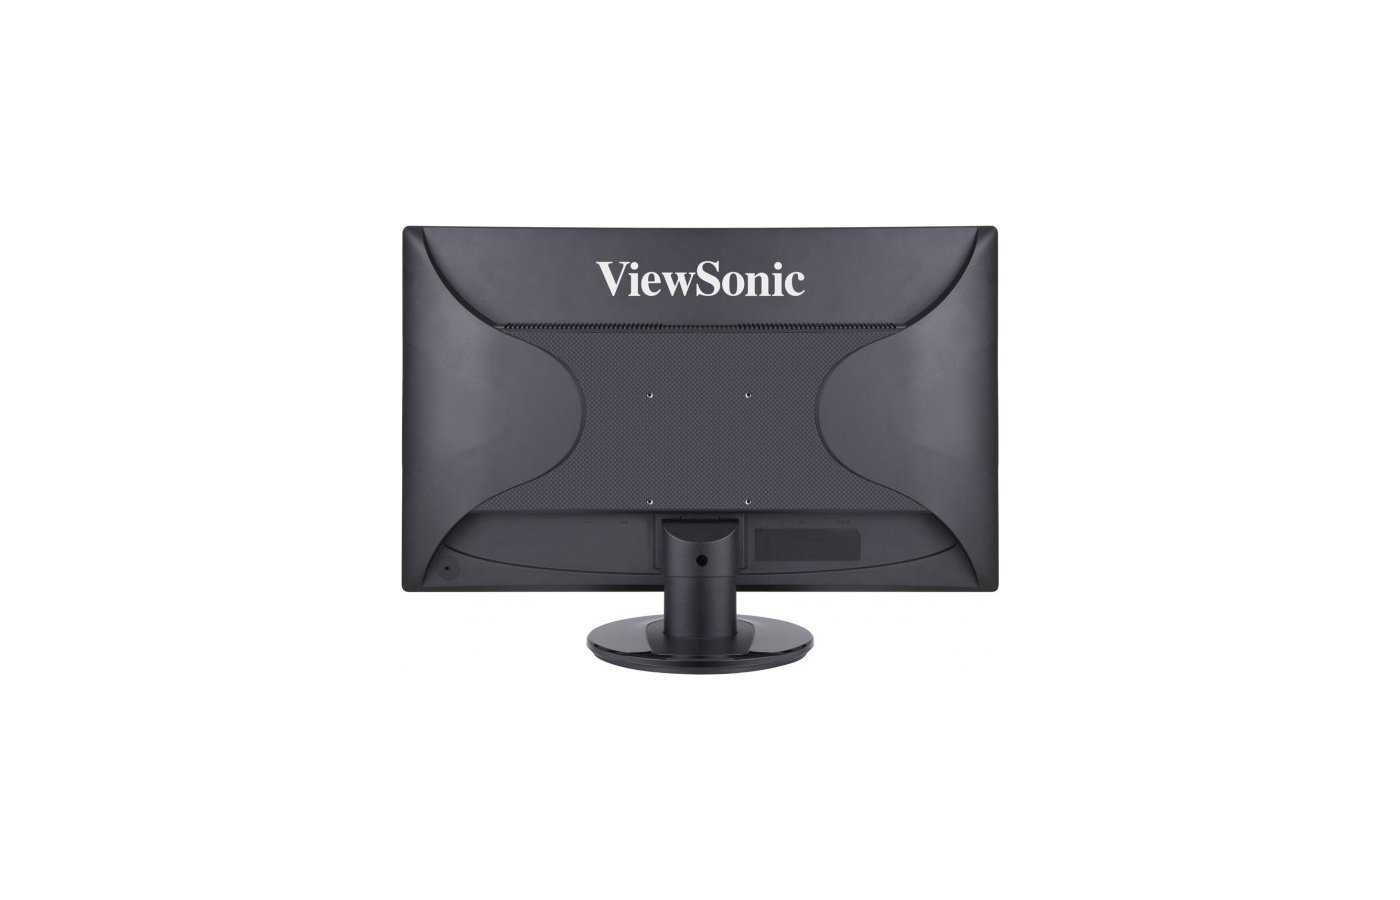 Жк монитор 21.5" viewsonic va2246a-led — купить, цена и характеристики, отзывы